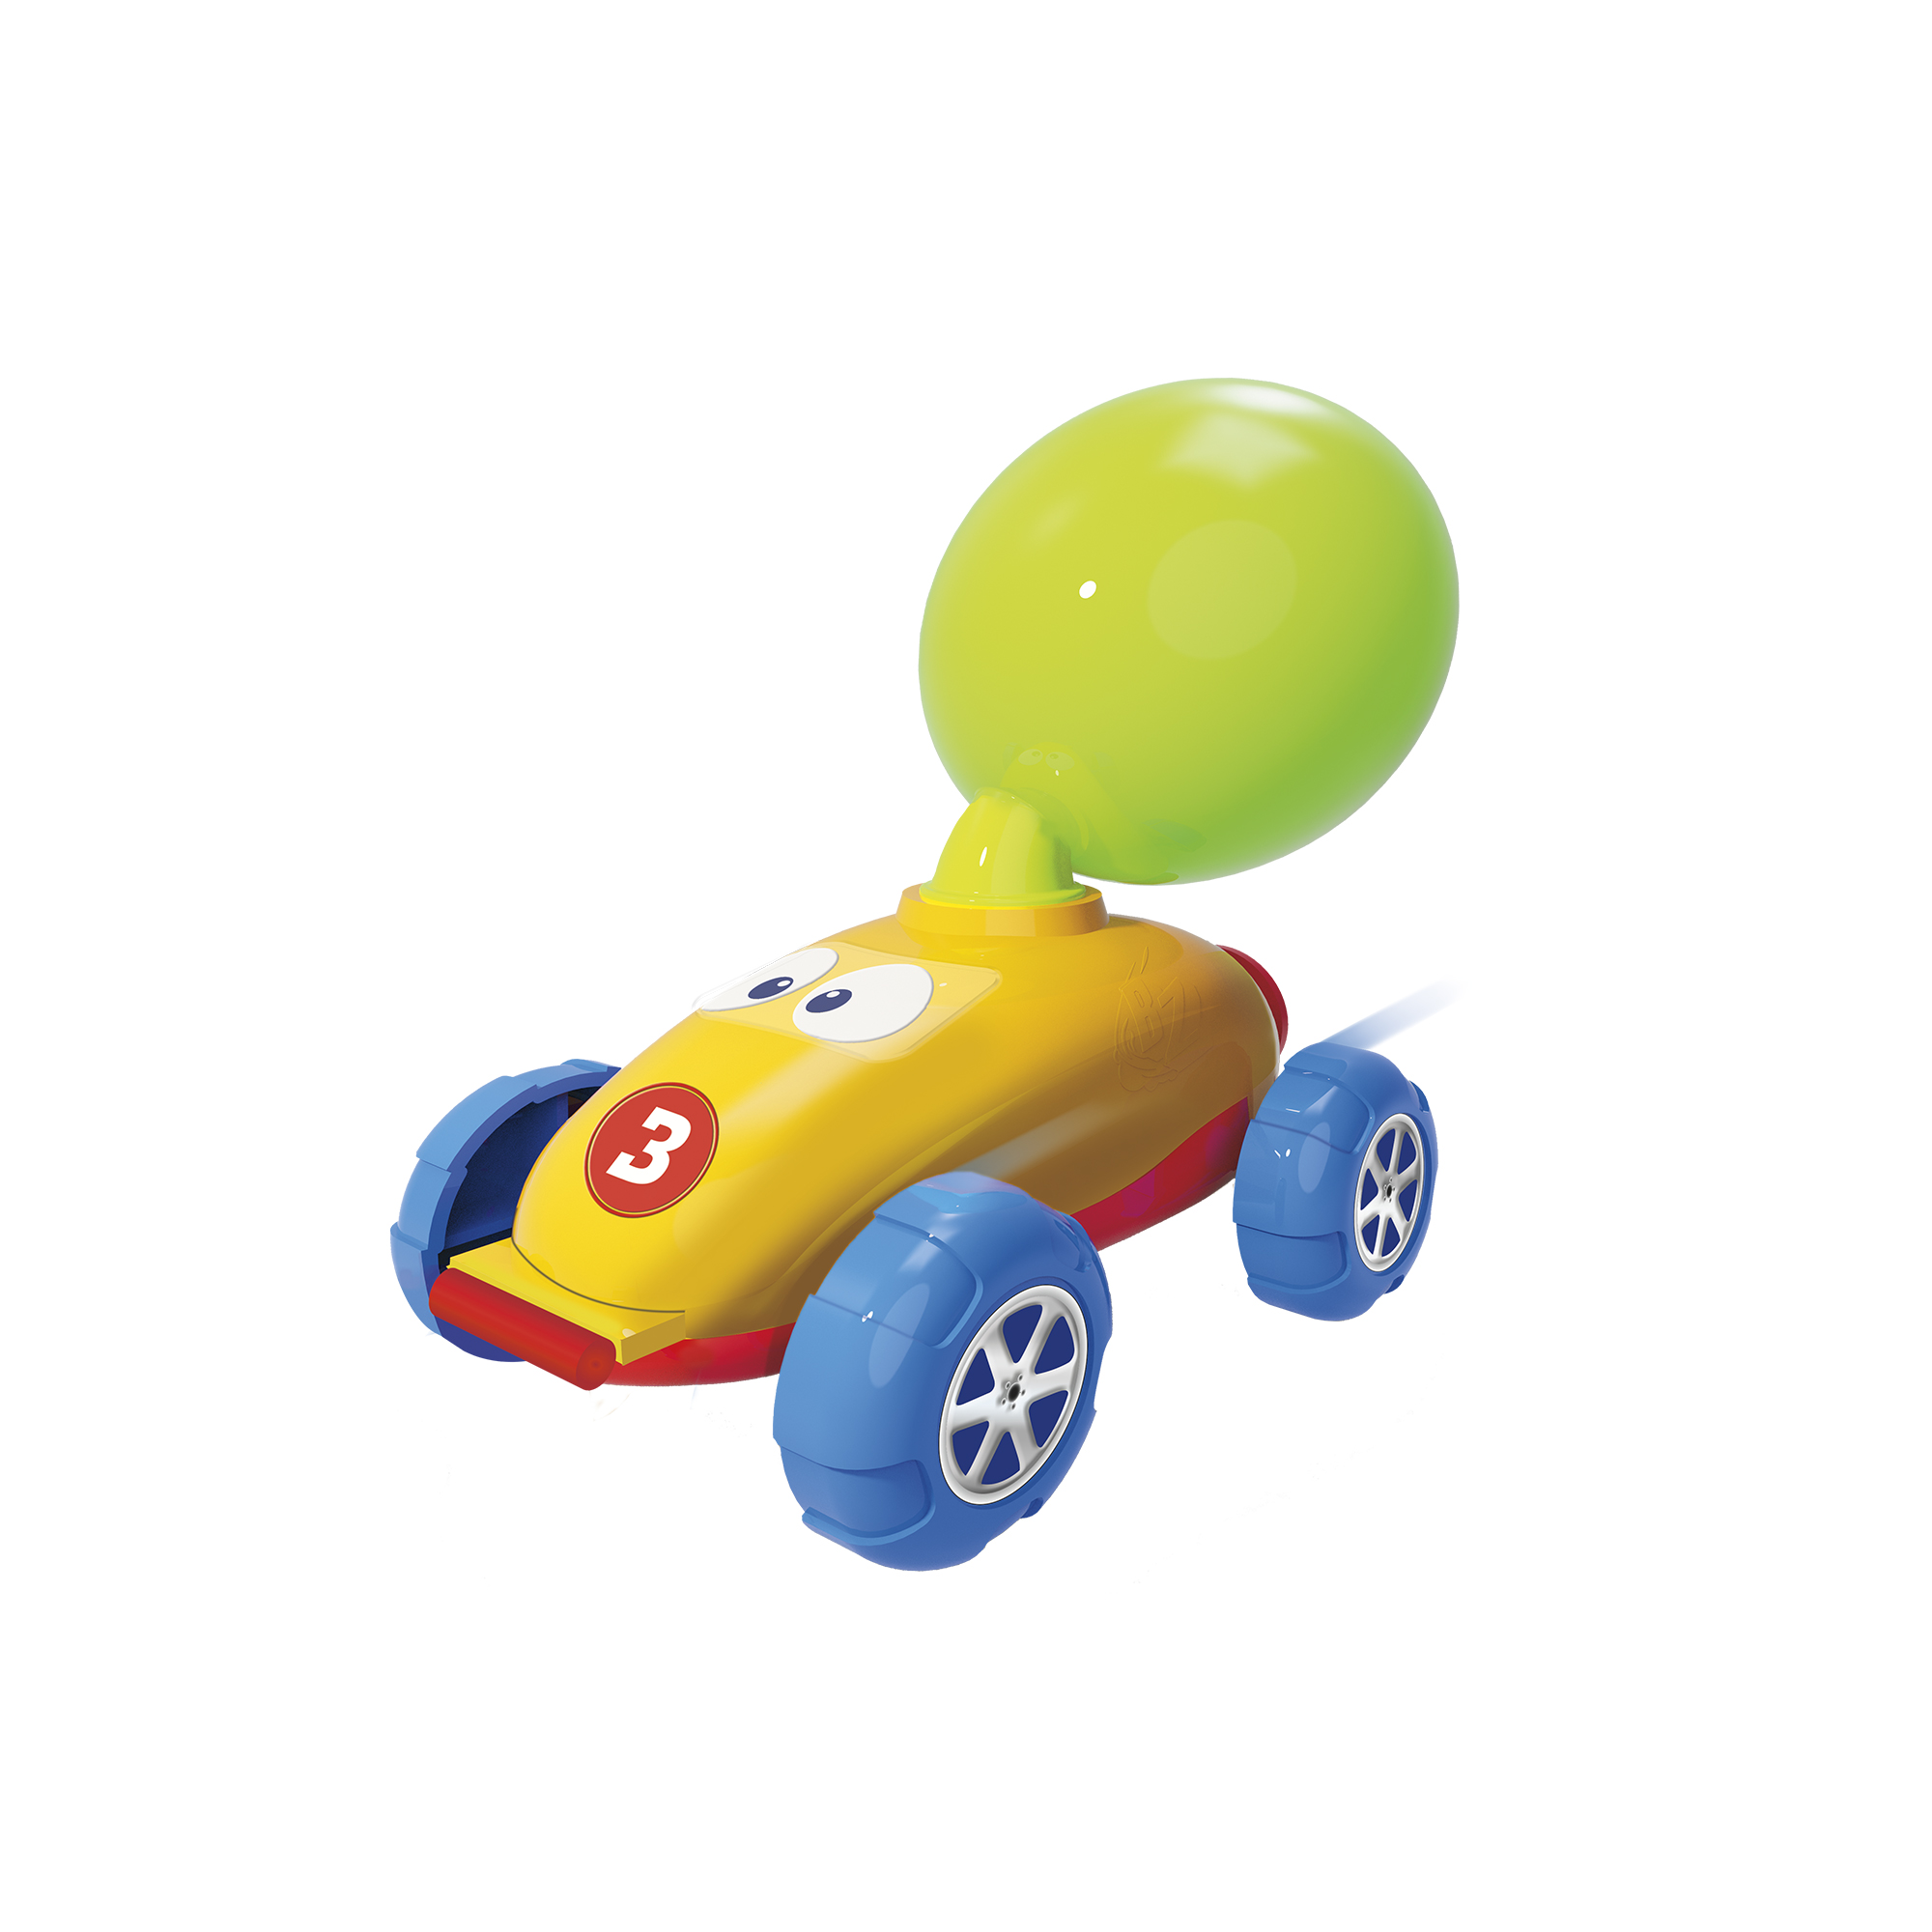 Balloon Zoom voiture